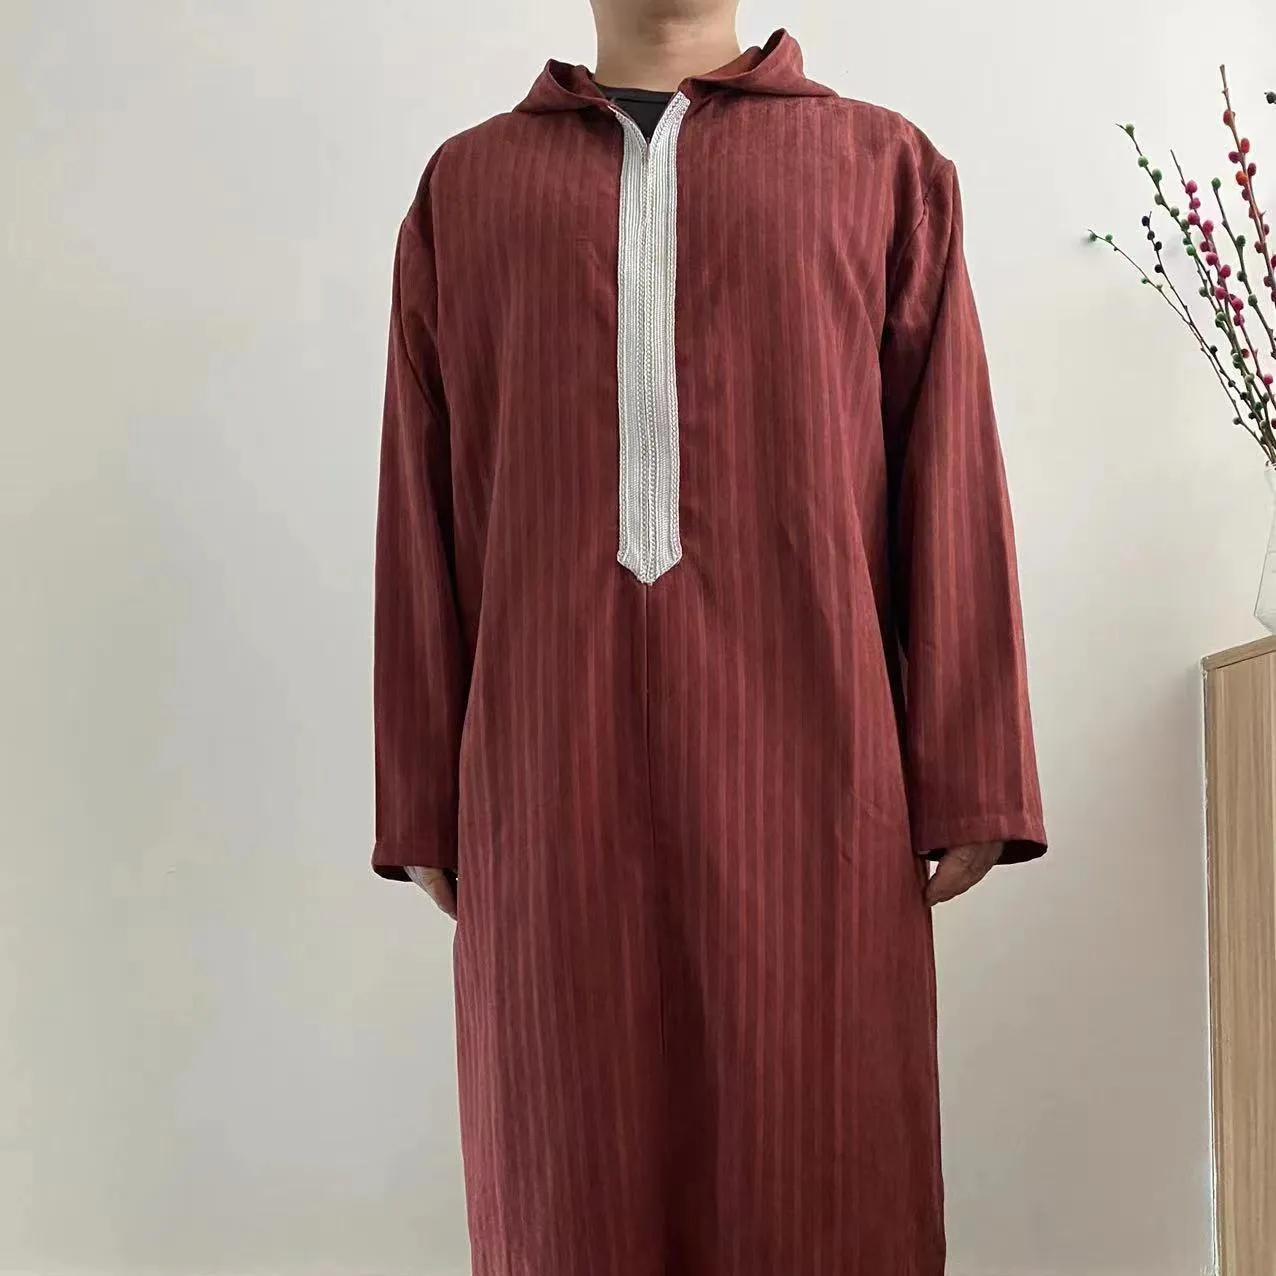 R-1 geleneksel müslüman giyim islam Abaya Dubai Robe islam adam arabistan suudi fas Kaftan Thobe erkekler için